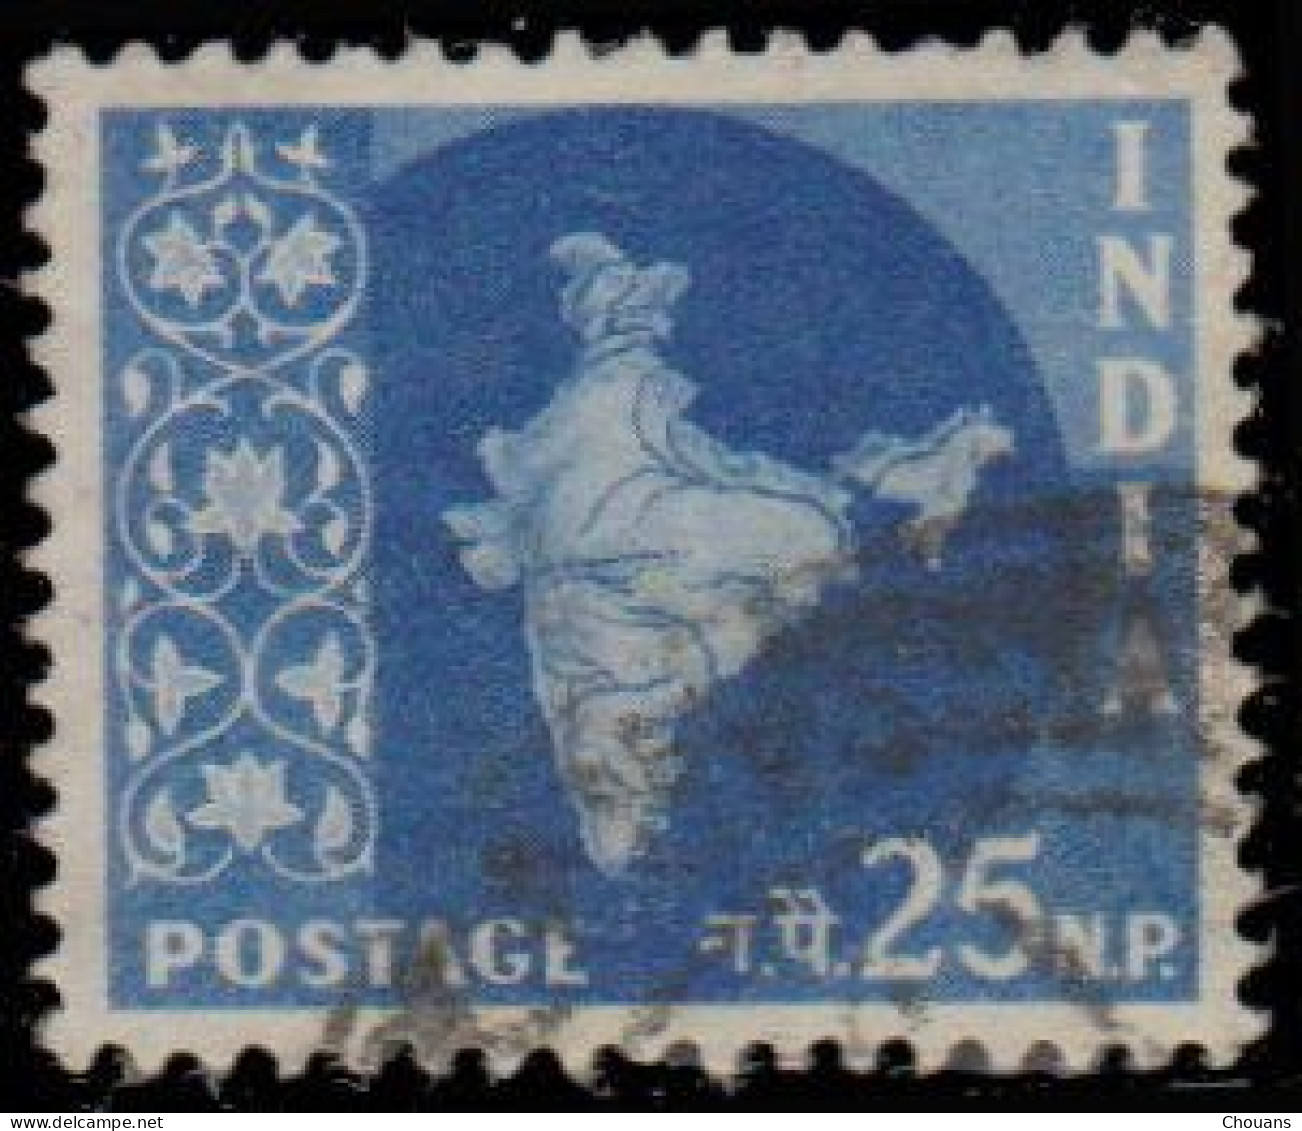 Inde 1957. ~ YT 74/82 - Carte de l'Inde (10 v.)